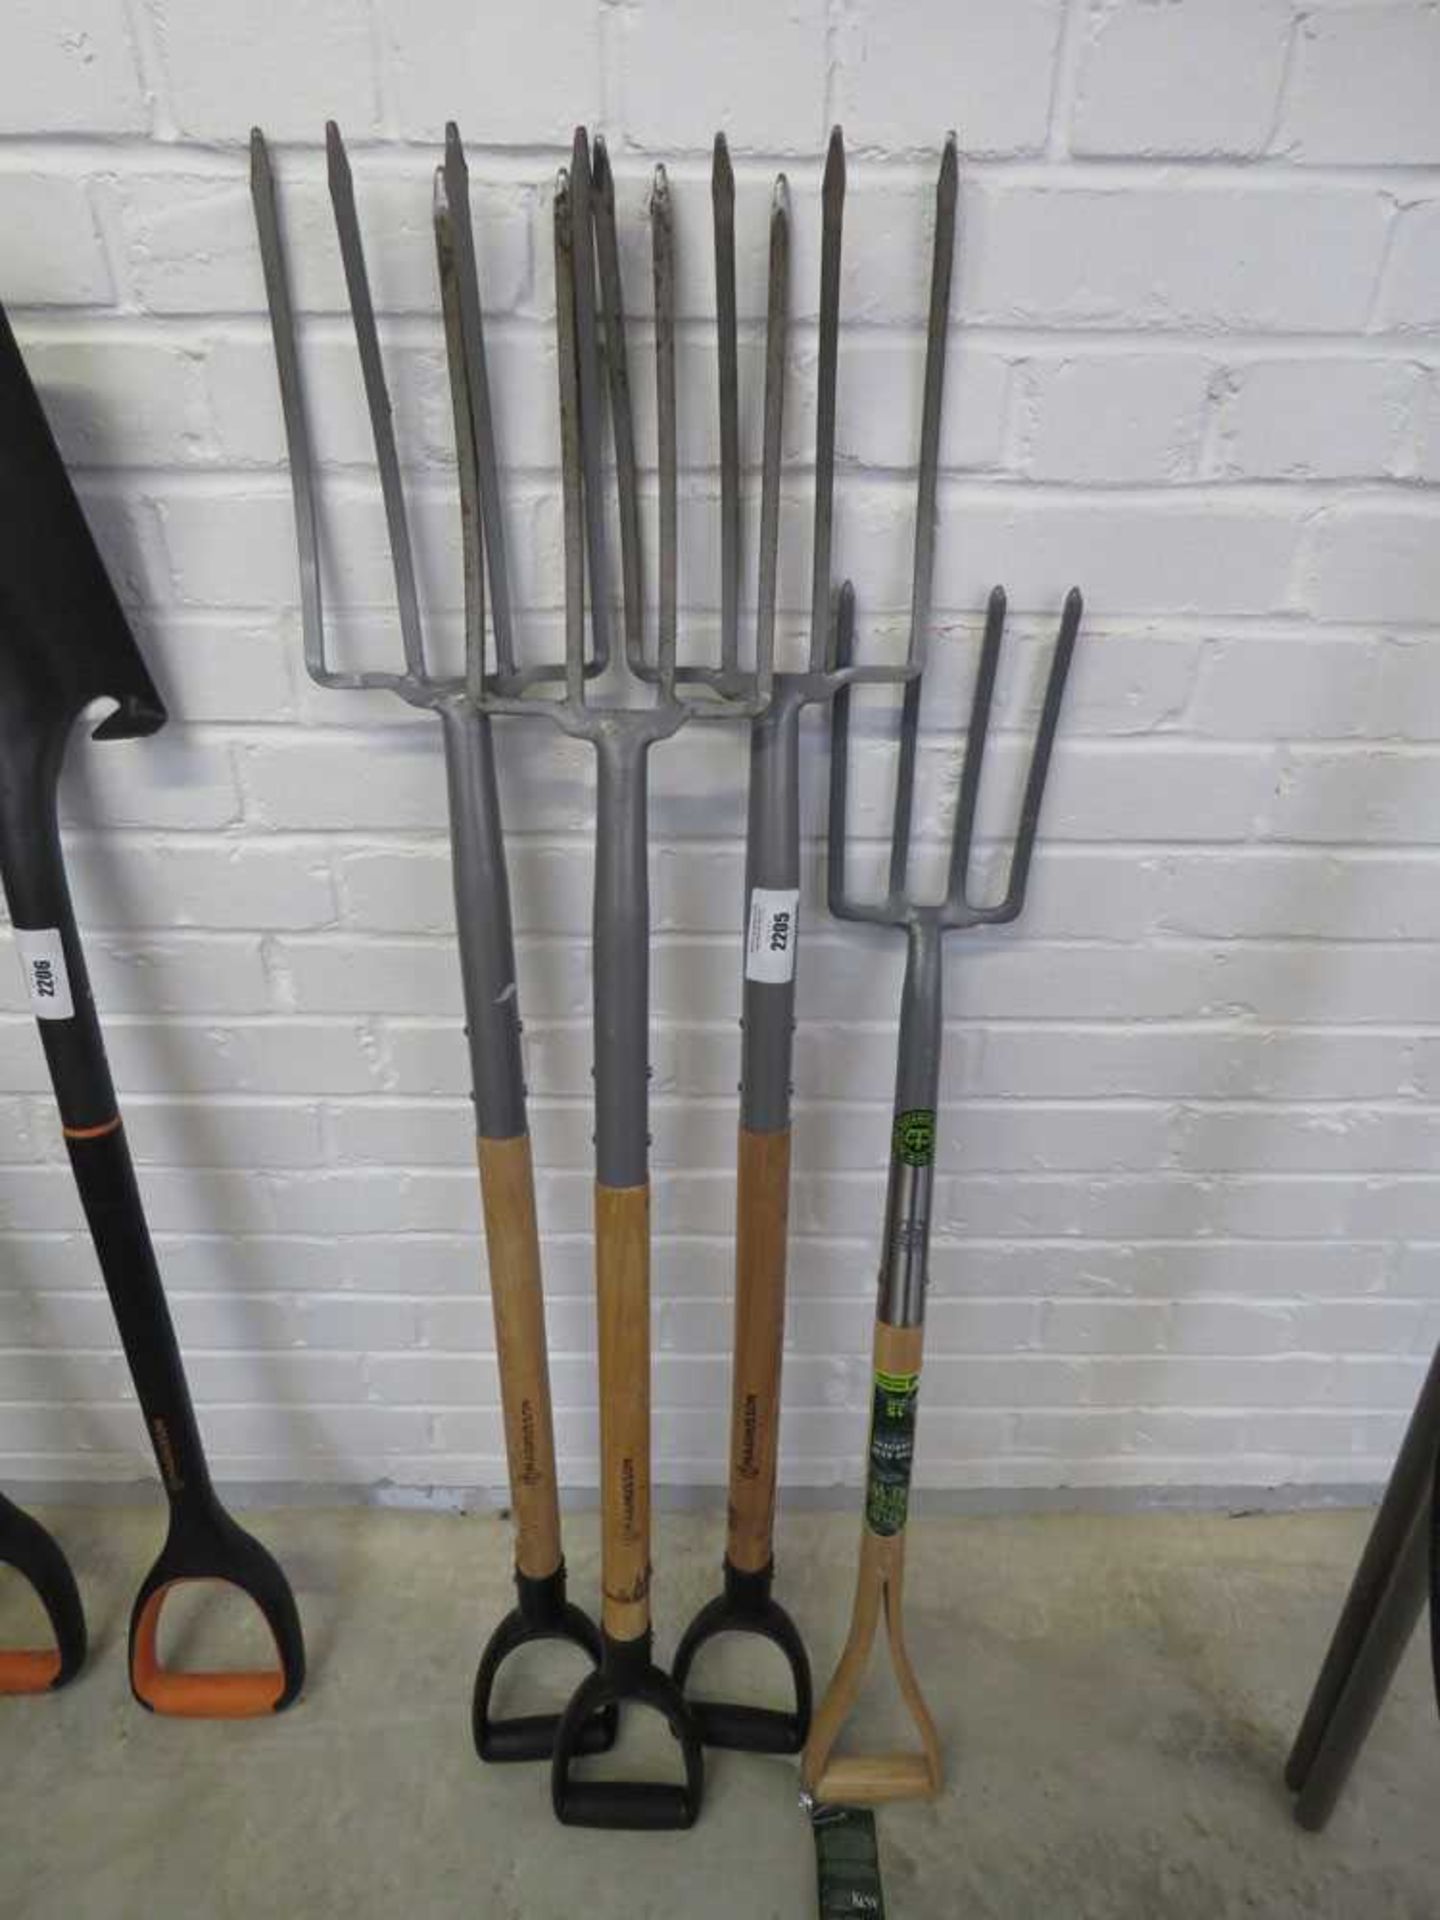 4 wooden handled garden forks - Image 2 of 2